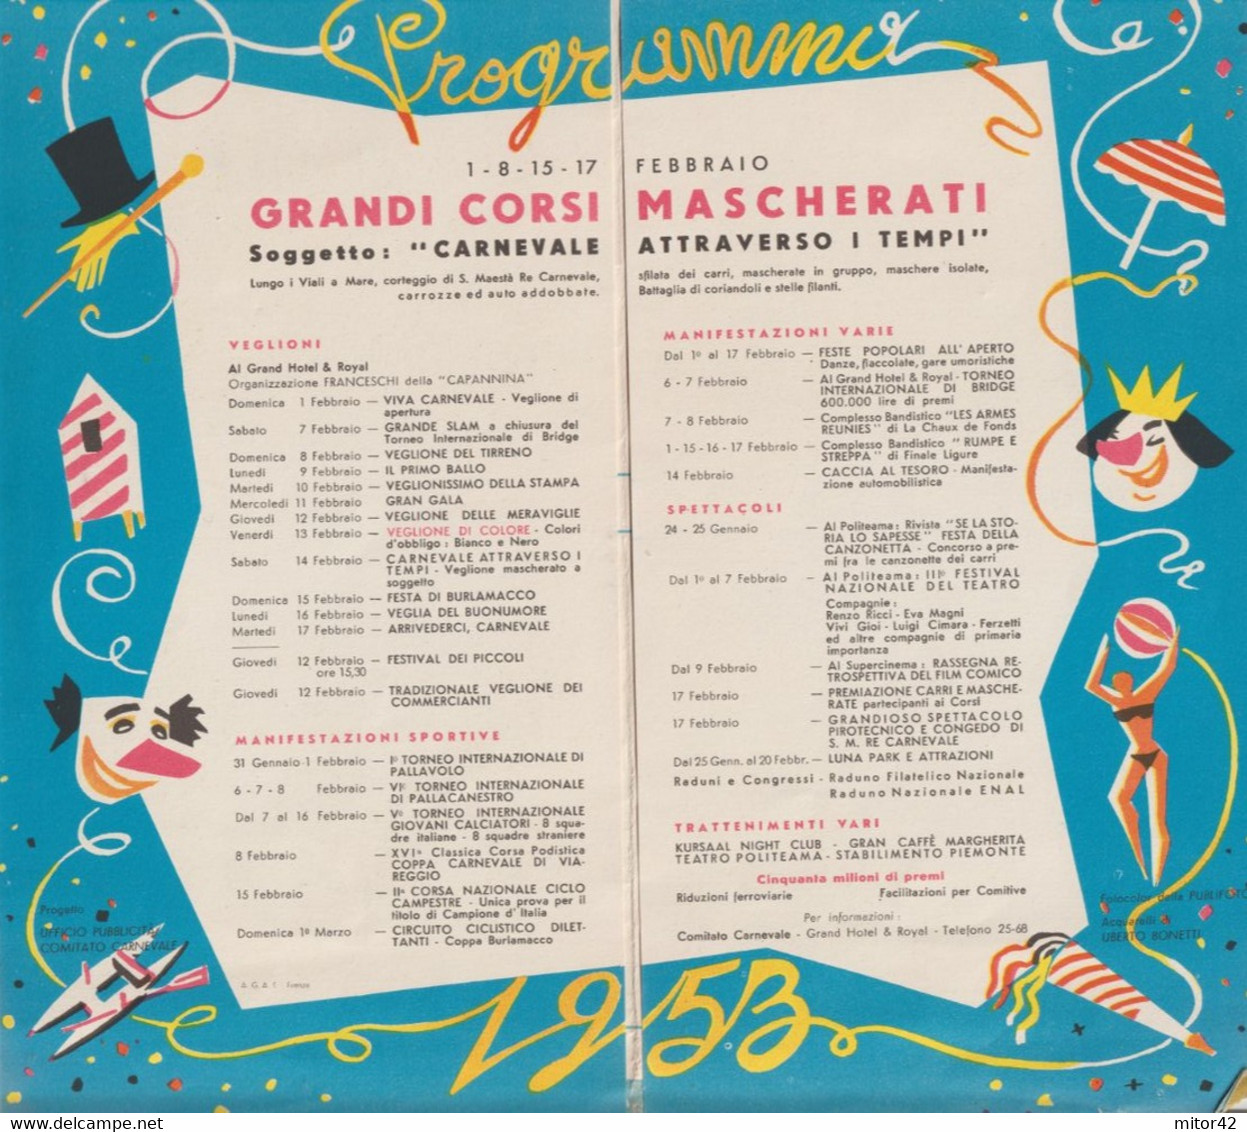 286-Viareggio-Carnevale 1953-Raro Depliant Di 8 Facciate - Carnaval